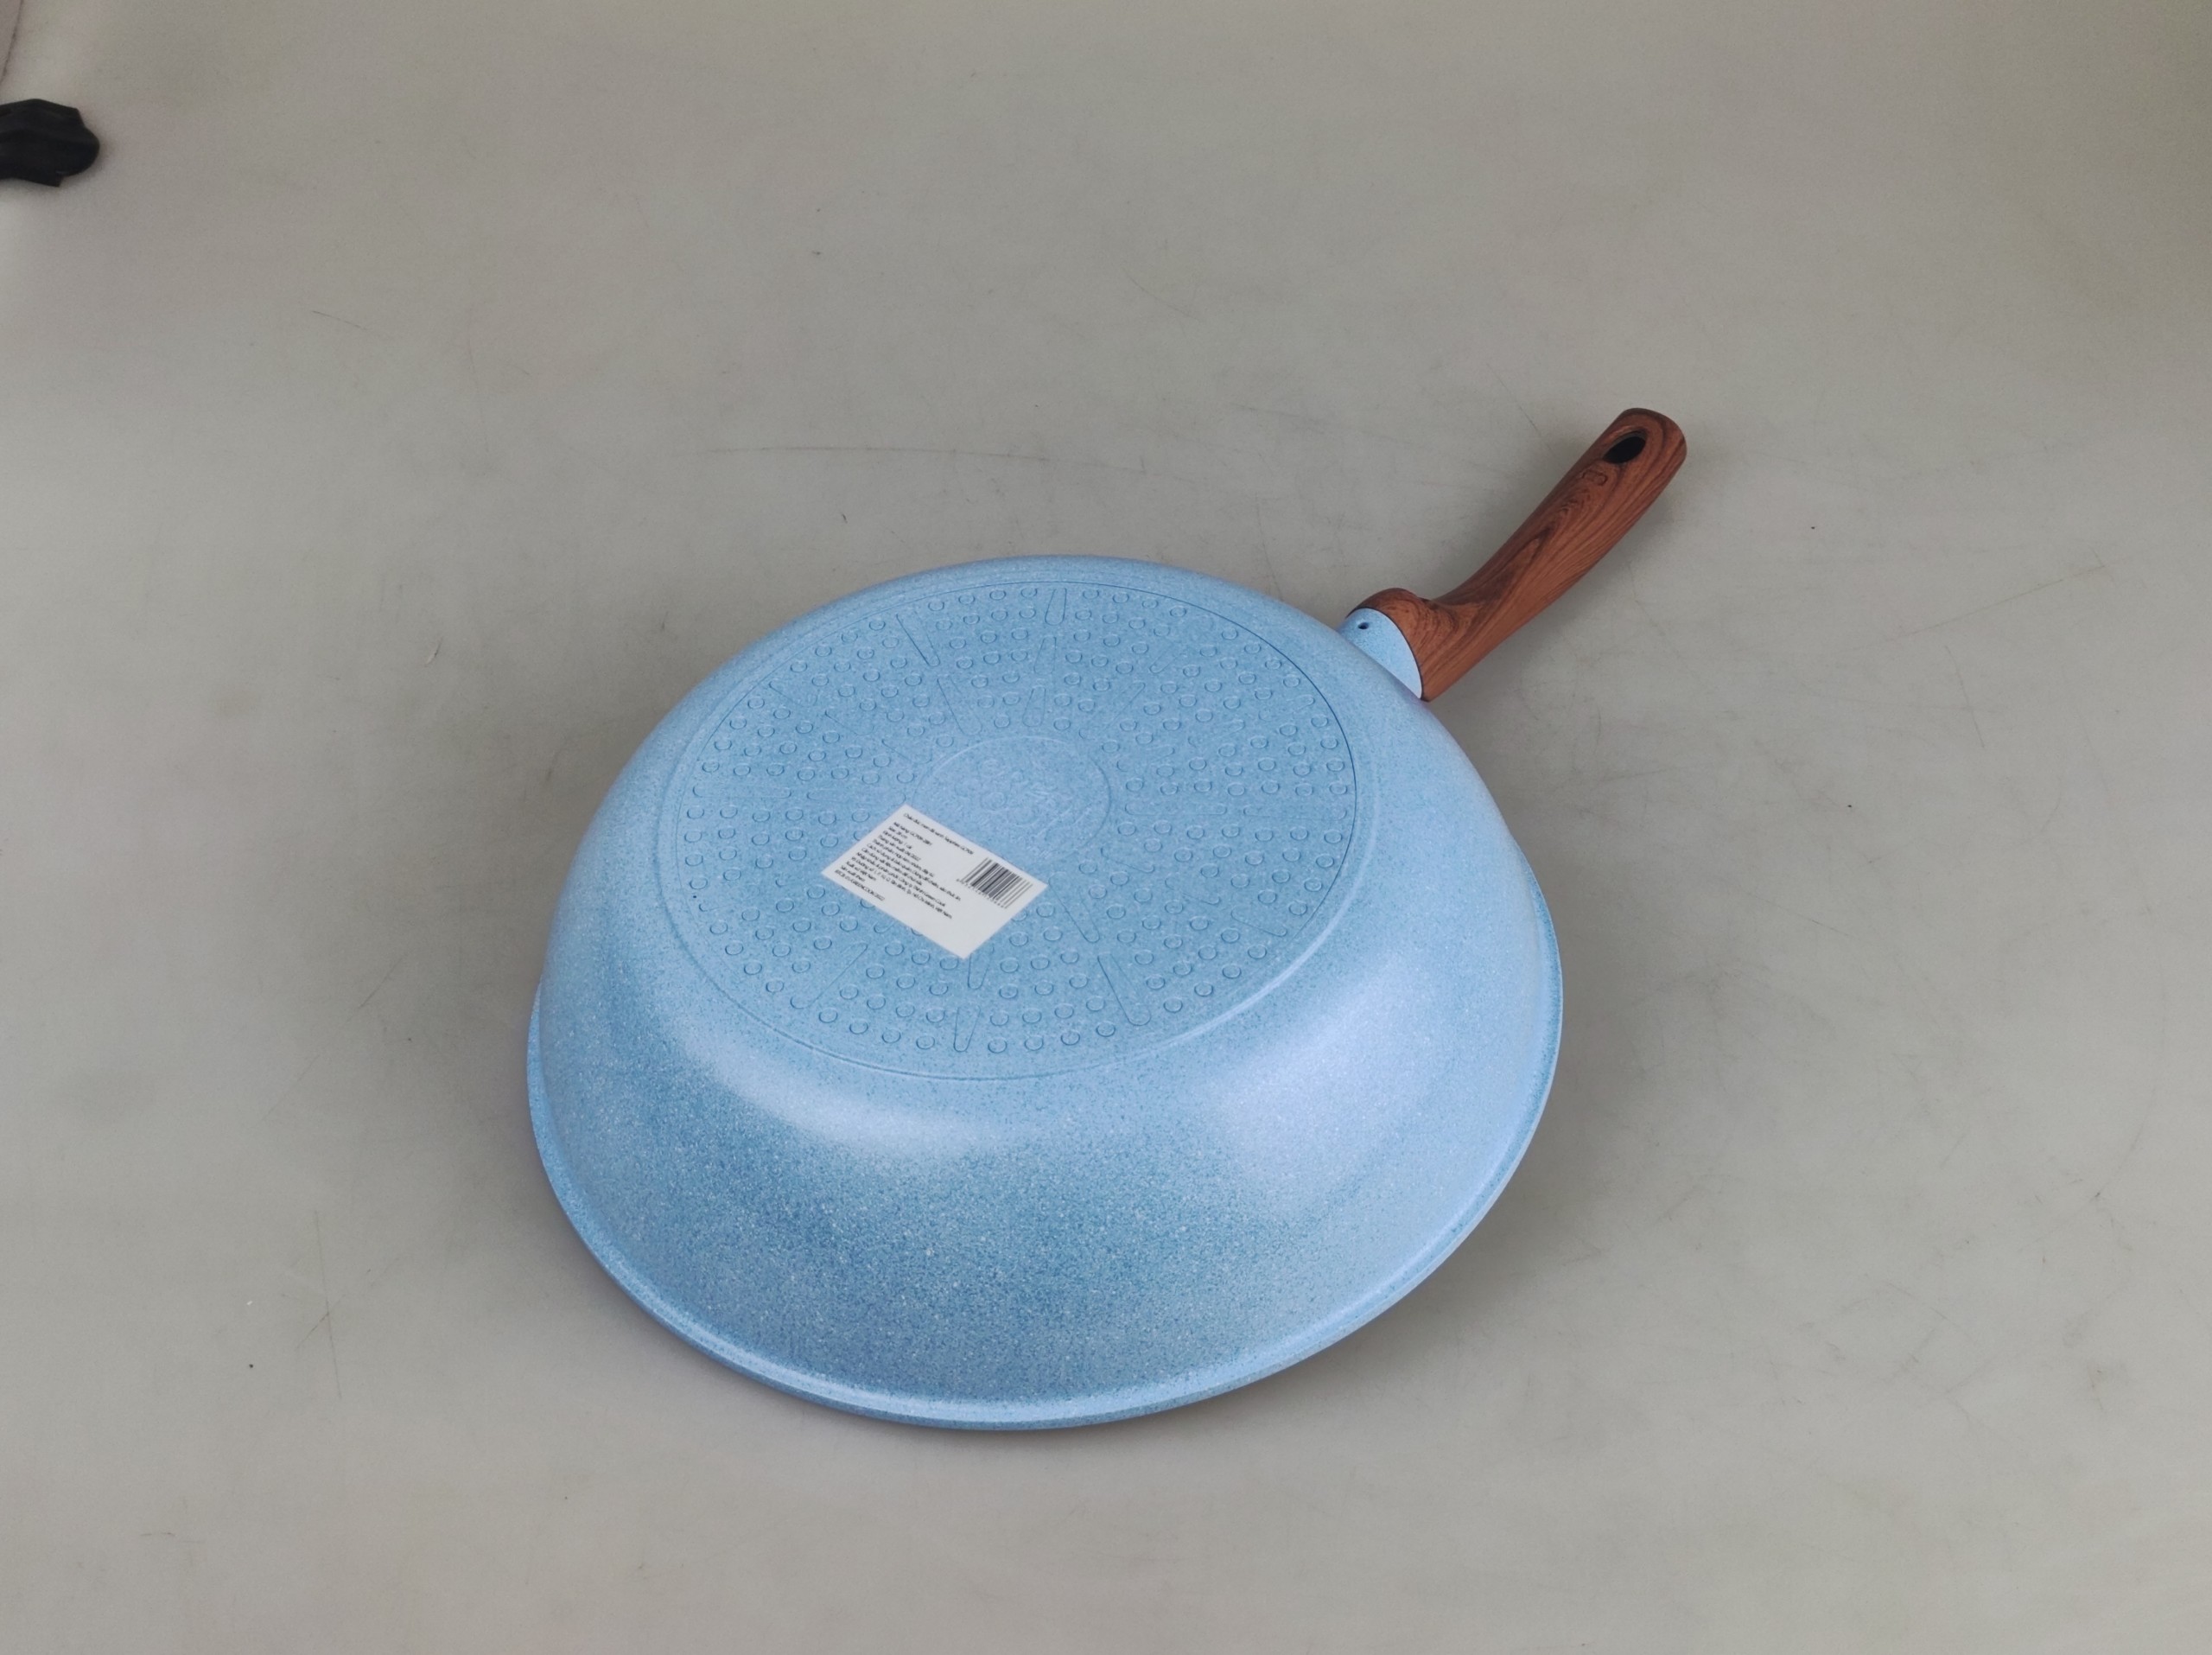 Chảo chống dính men đá xanh Sapphire 10 lớp Greencook GCP09 dùng được bếp ga, bếp hồng ngoại, bếp từ